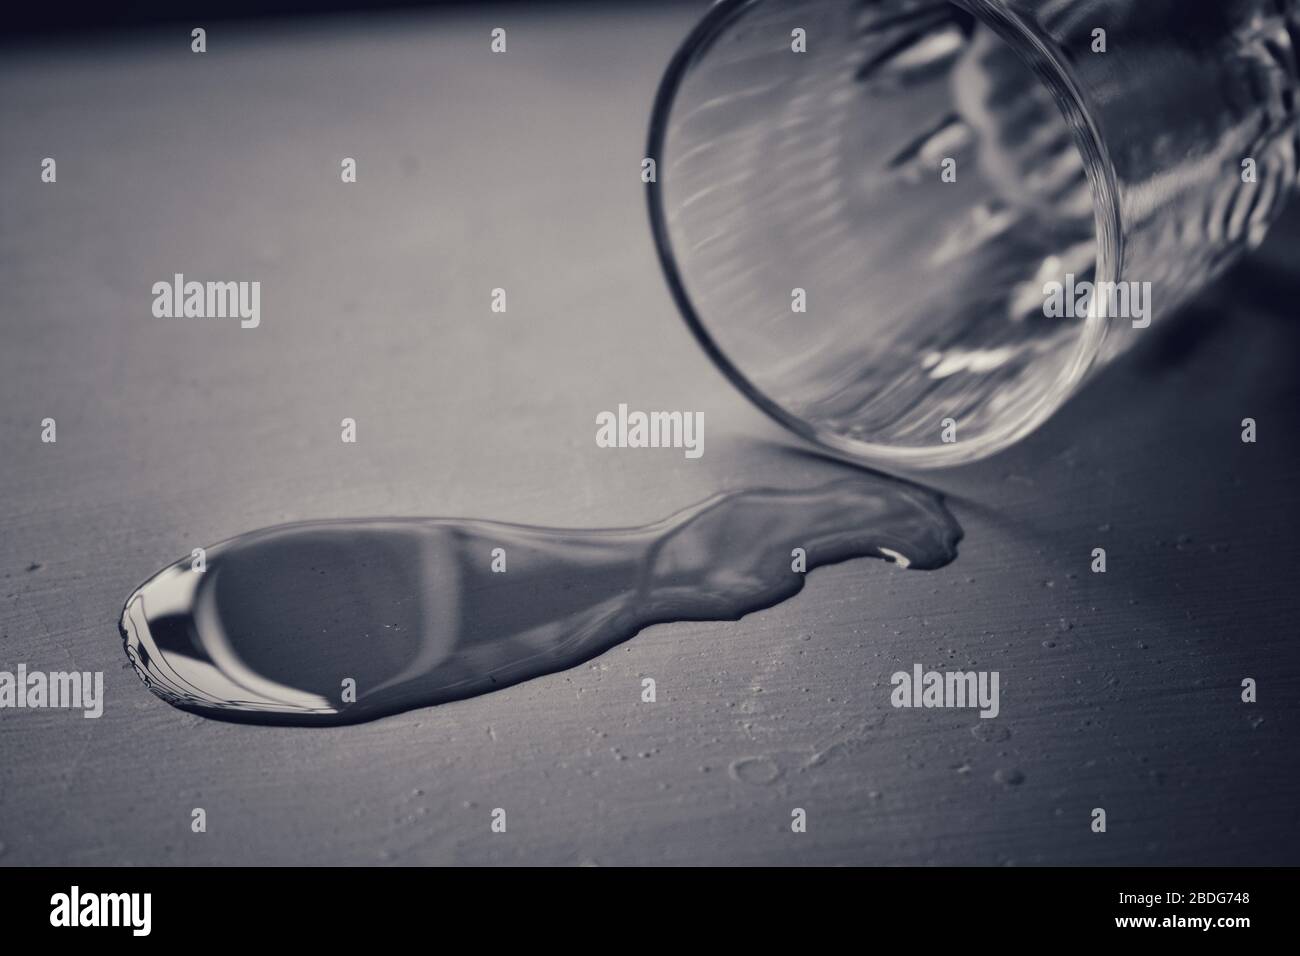 Schwarz-weißes Bild, in dem aus einem leeren Glas eine kleine Menge Wasser auf den Boden gegossen wird Stockfoto